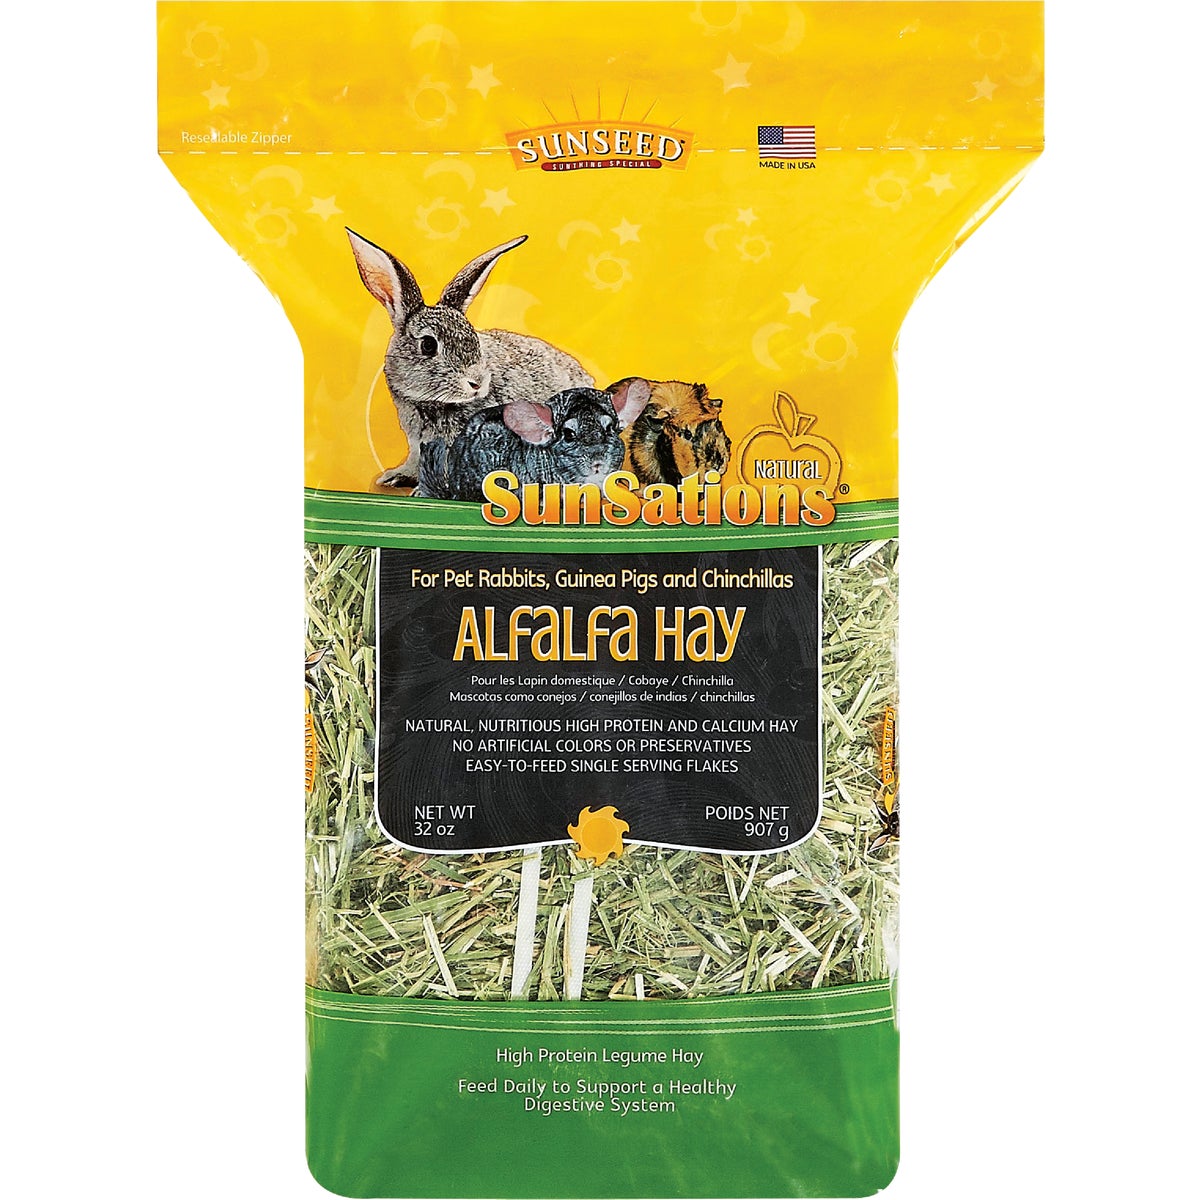 Item 705575, Natural, 100% North American farm-grown alfalfa hay.